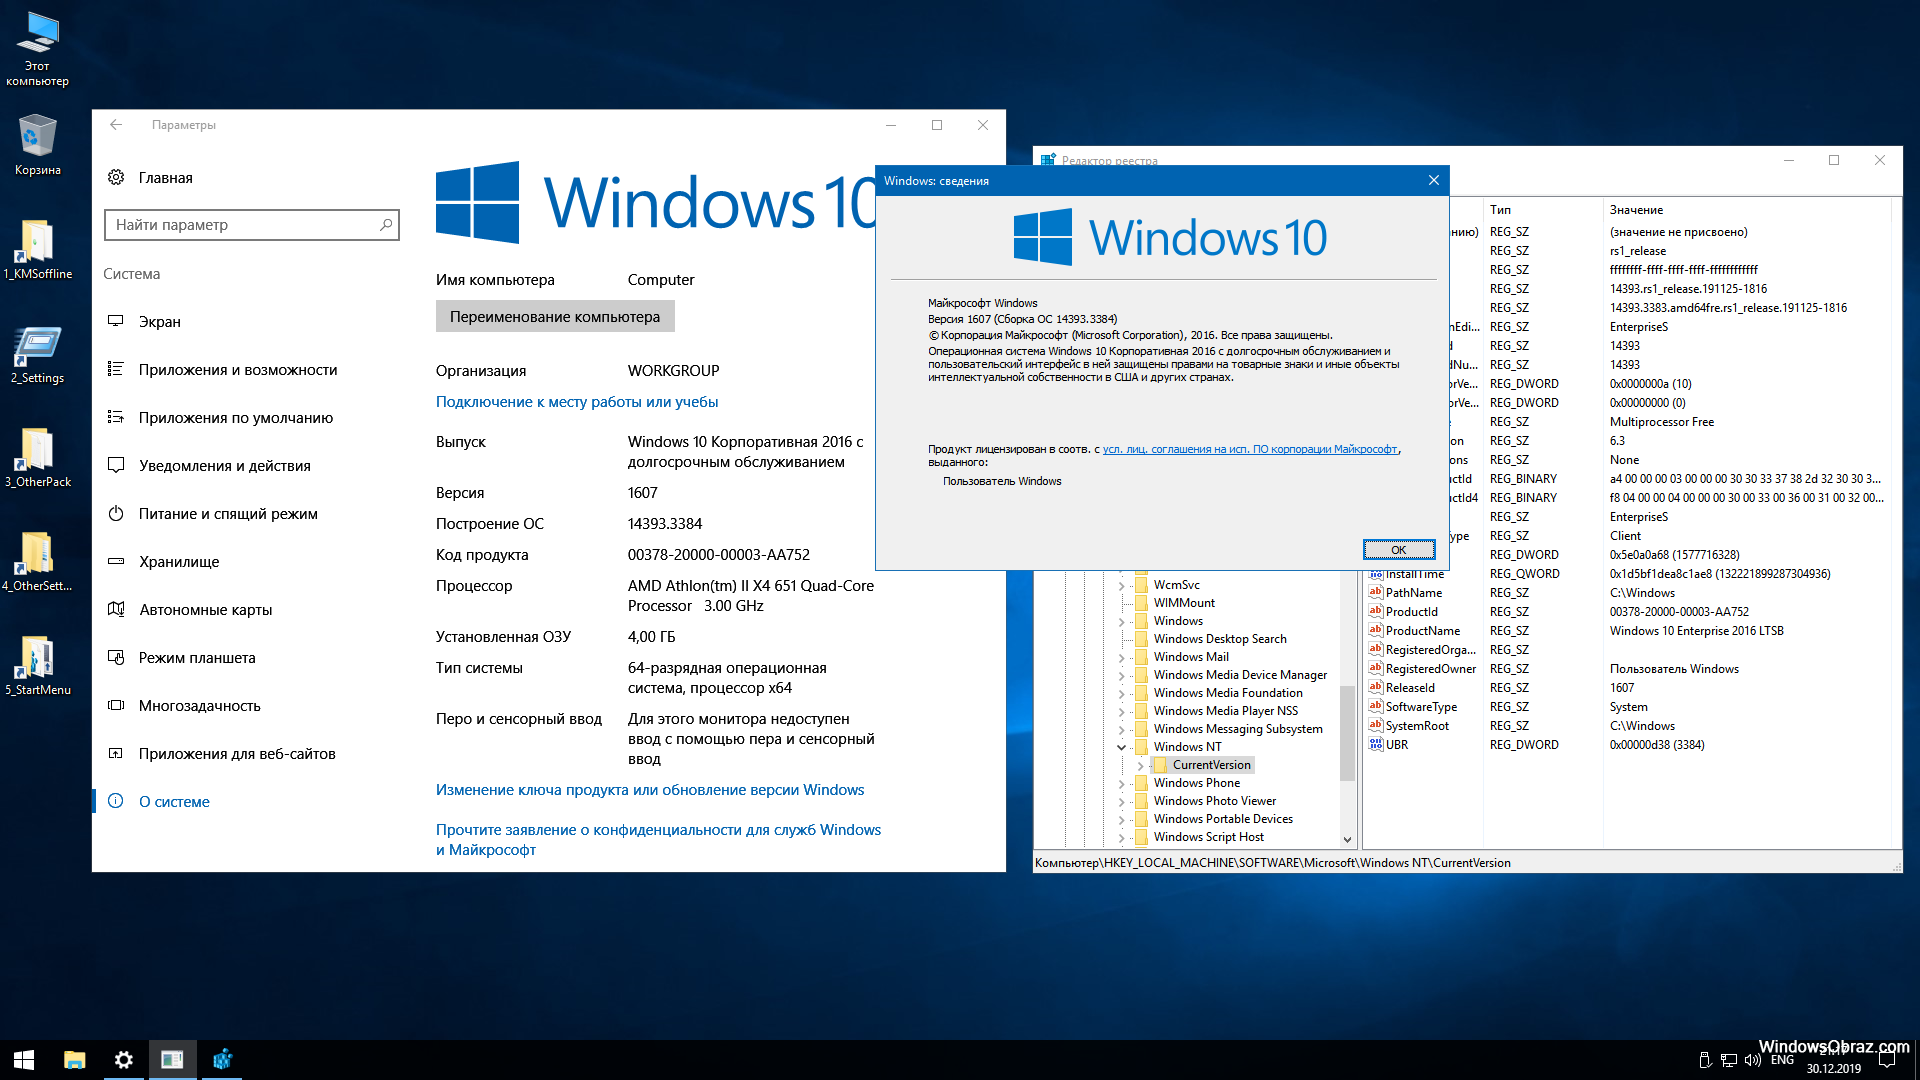 Виндовс 10 информация. Windows 10 LTSB 1607. Windows 10 Enterprise (корпоративная). Windows 10 Enterprise 2016 LTSB. Windows 10 корпоративная Windows 10 корпоративная.